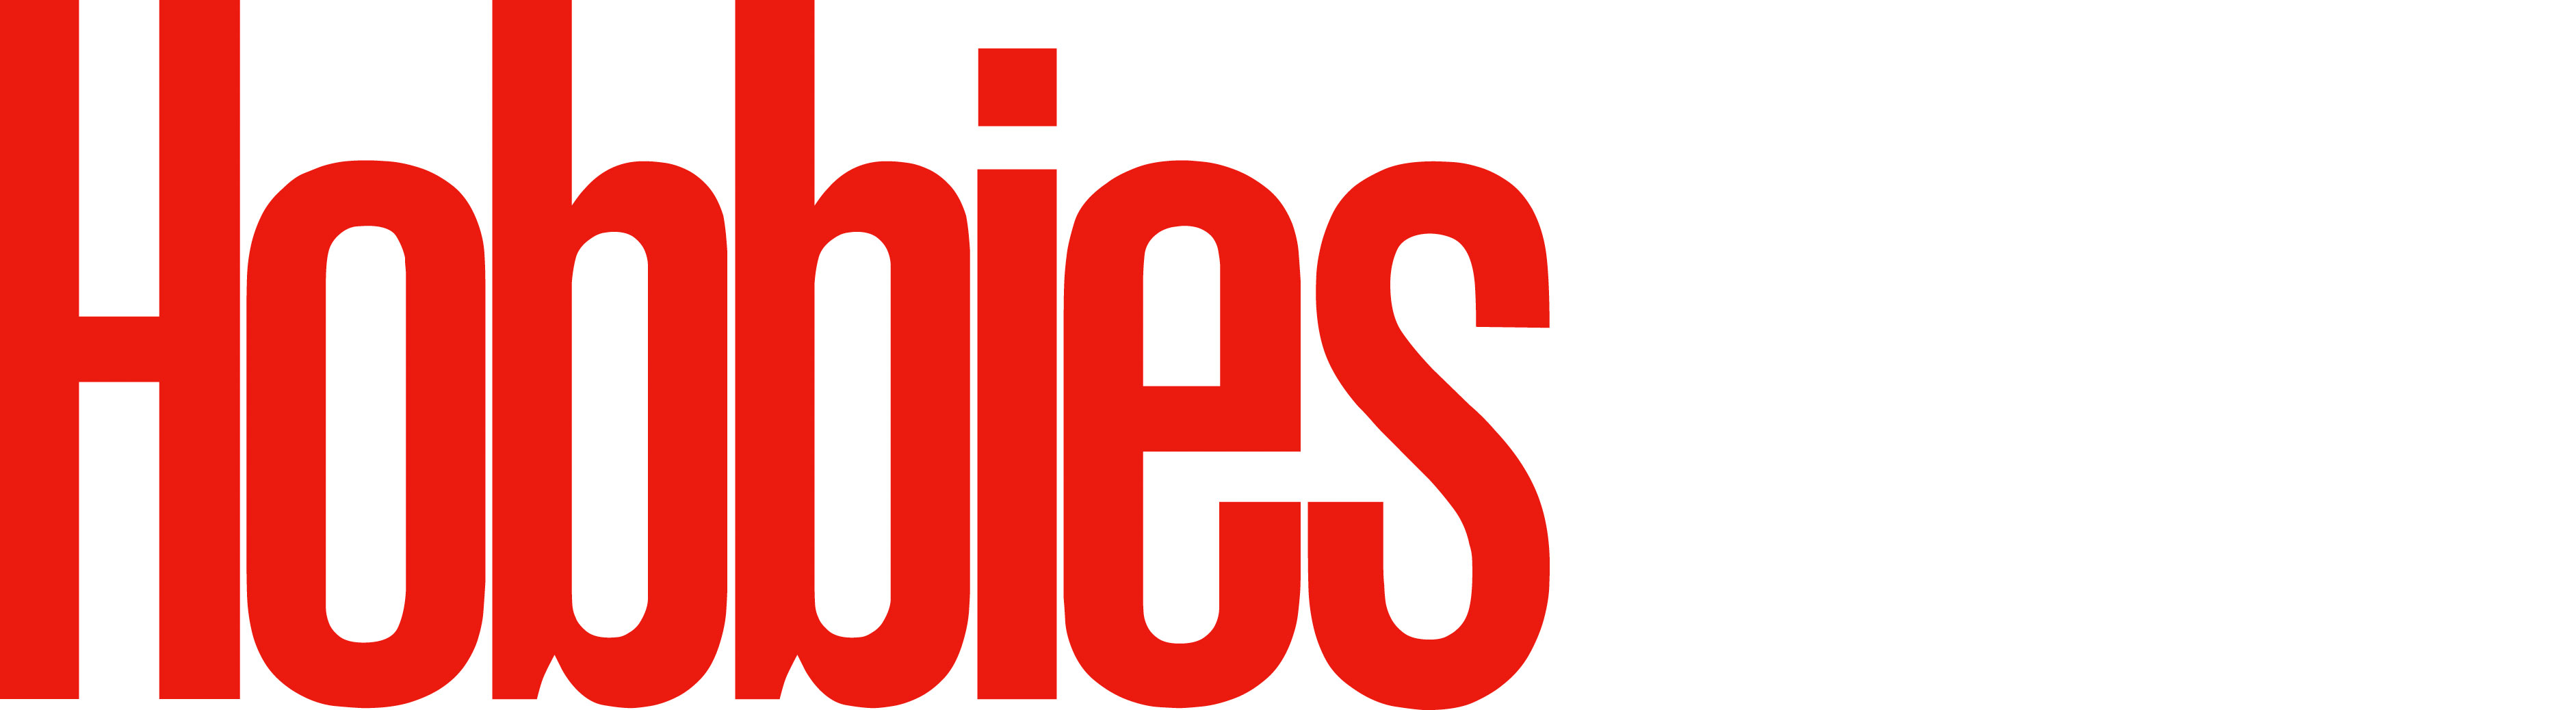 hobbies-site-logo